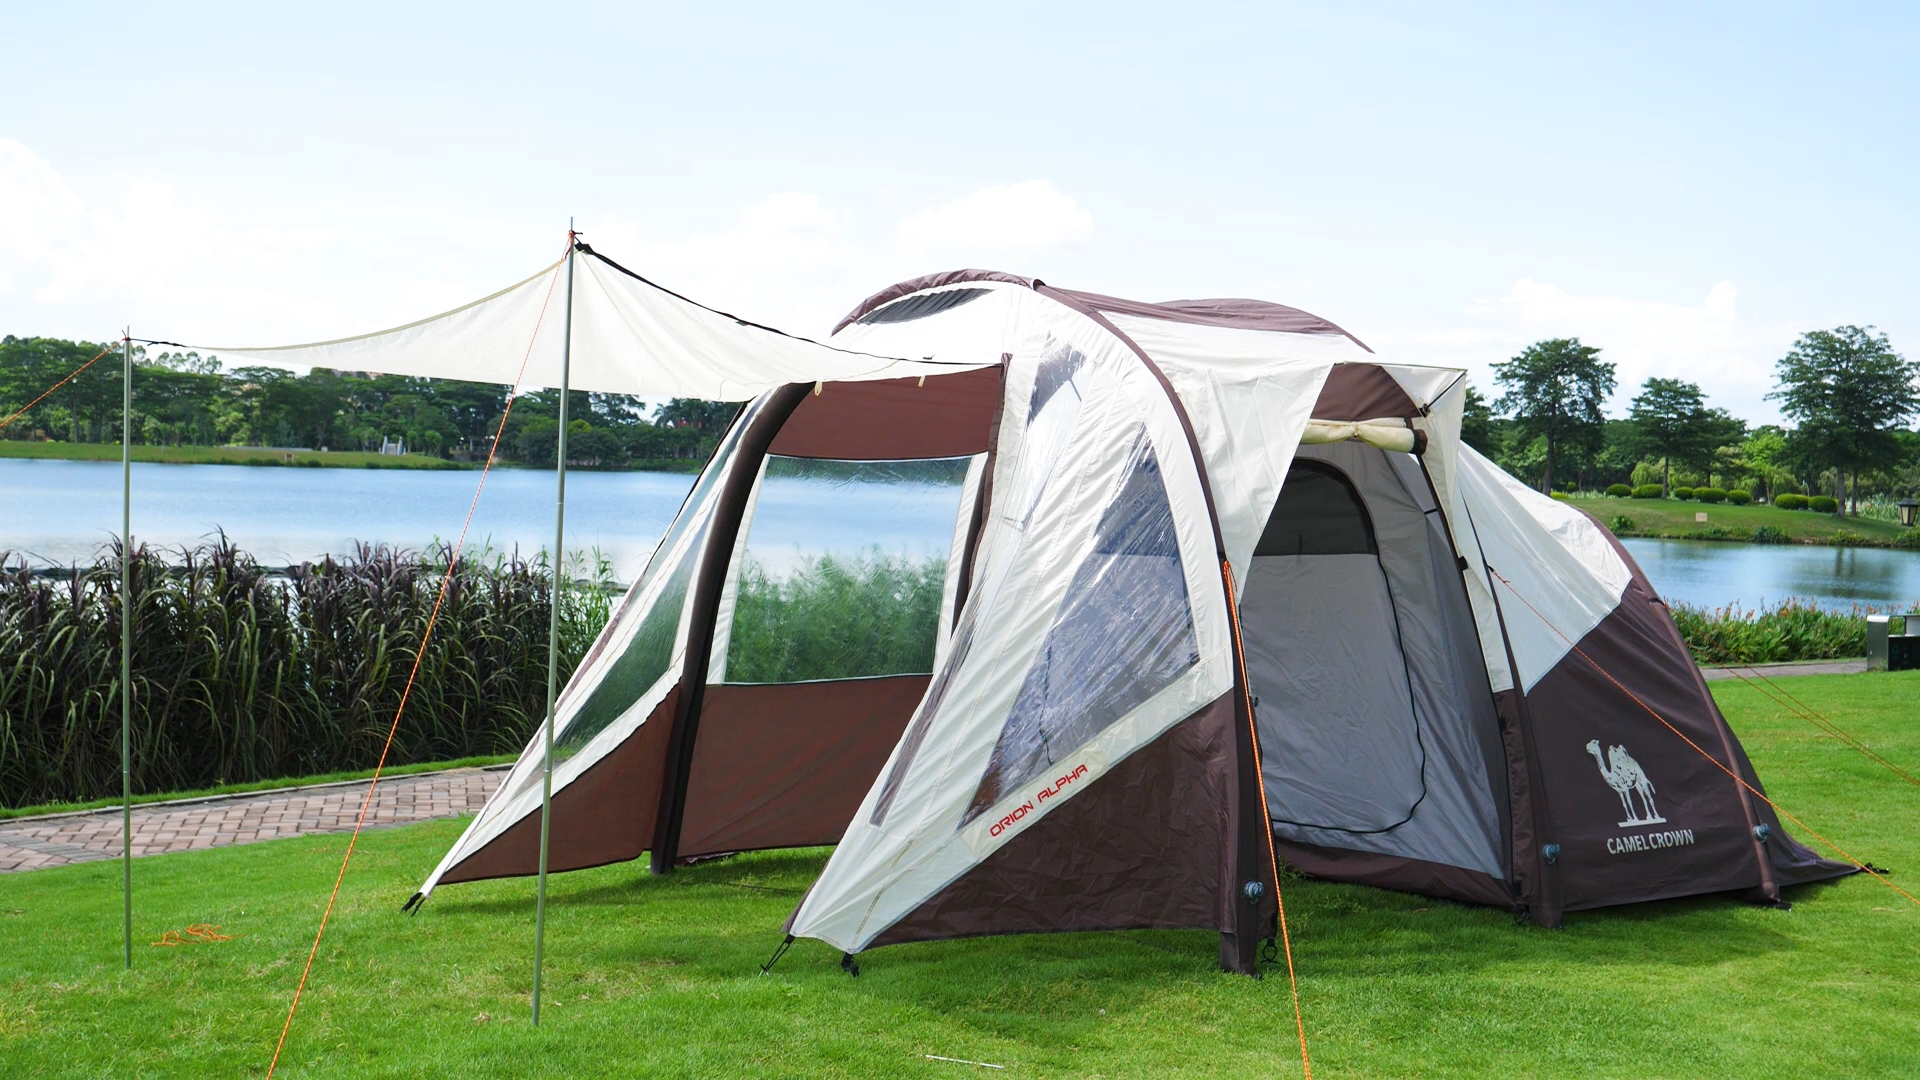 Camel Quick Setup Portable Custom Design конкурентоспособная цена быстрое открытие палатки зимние палатки Family Pop Up Tent1